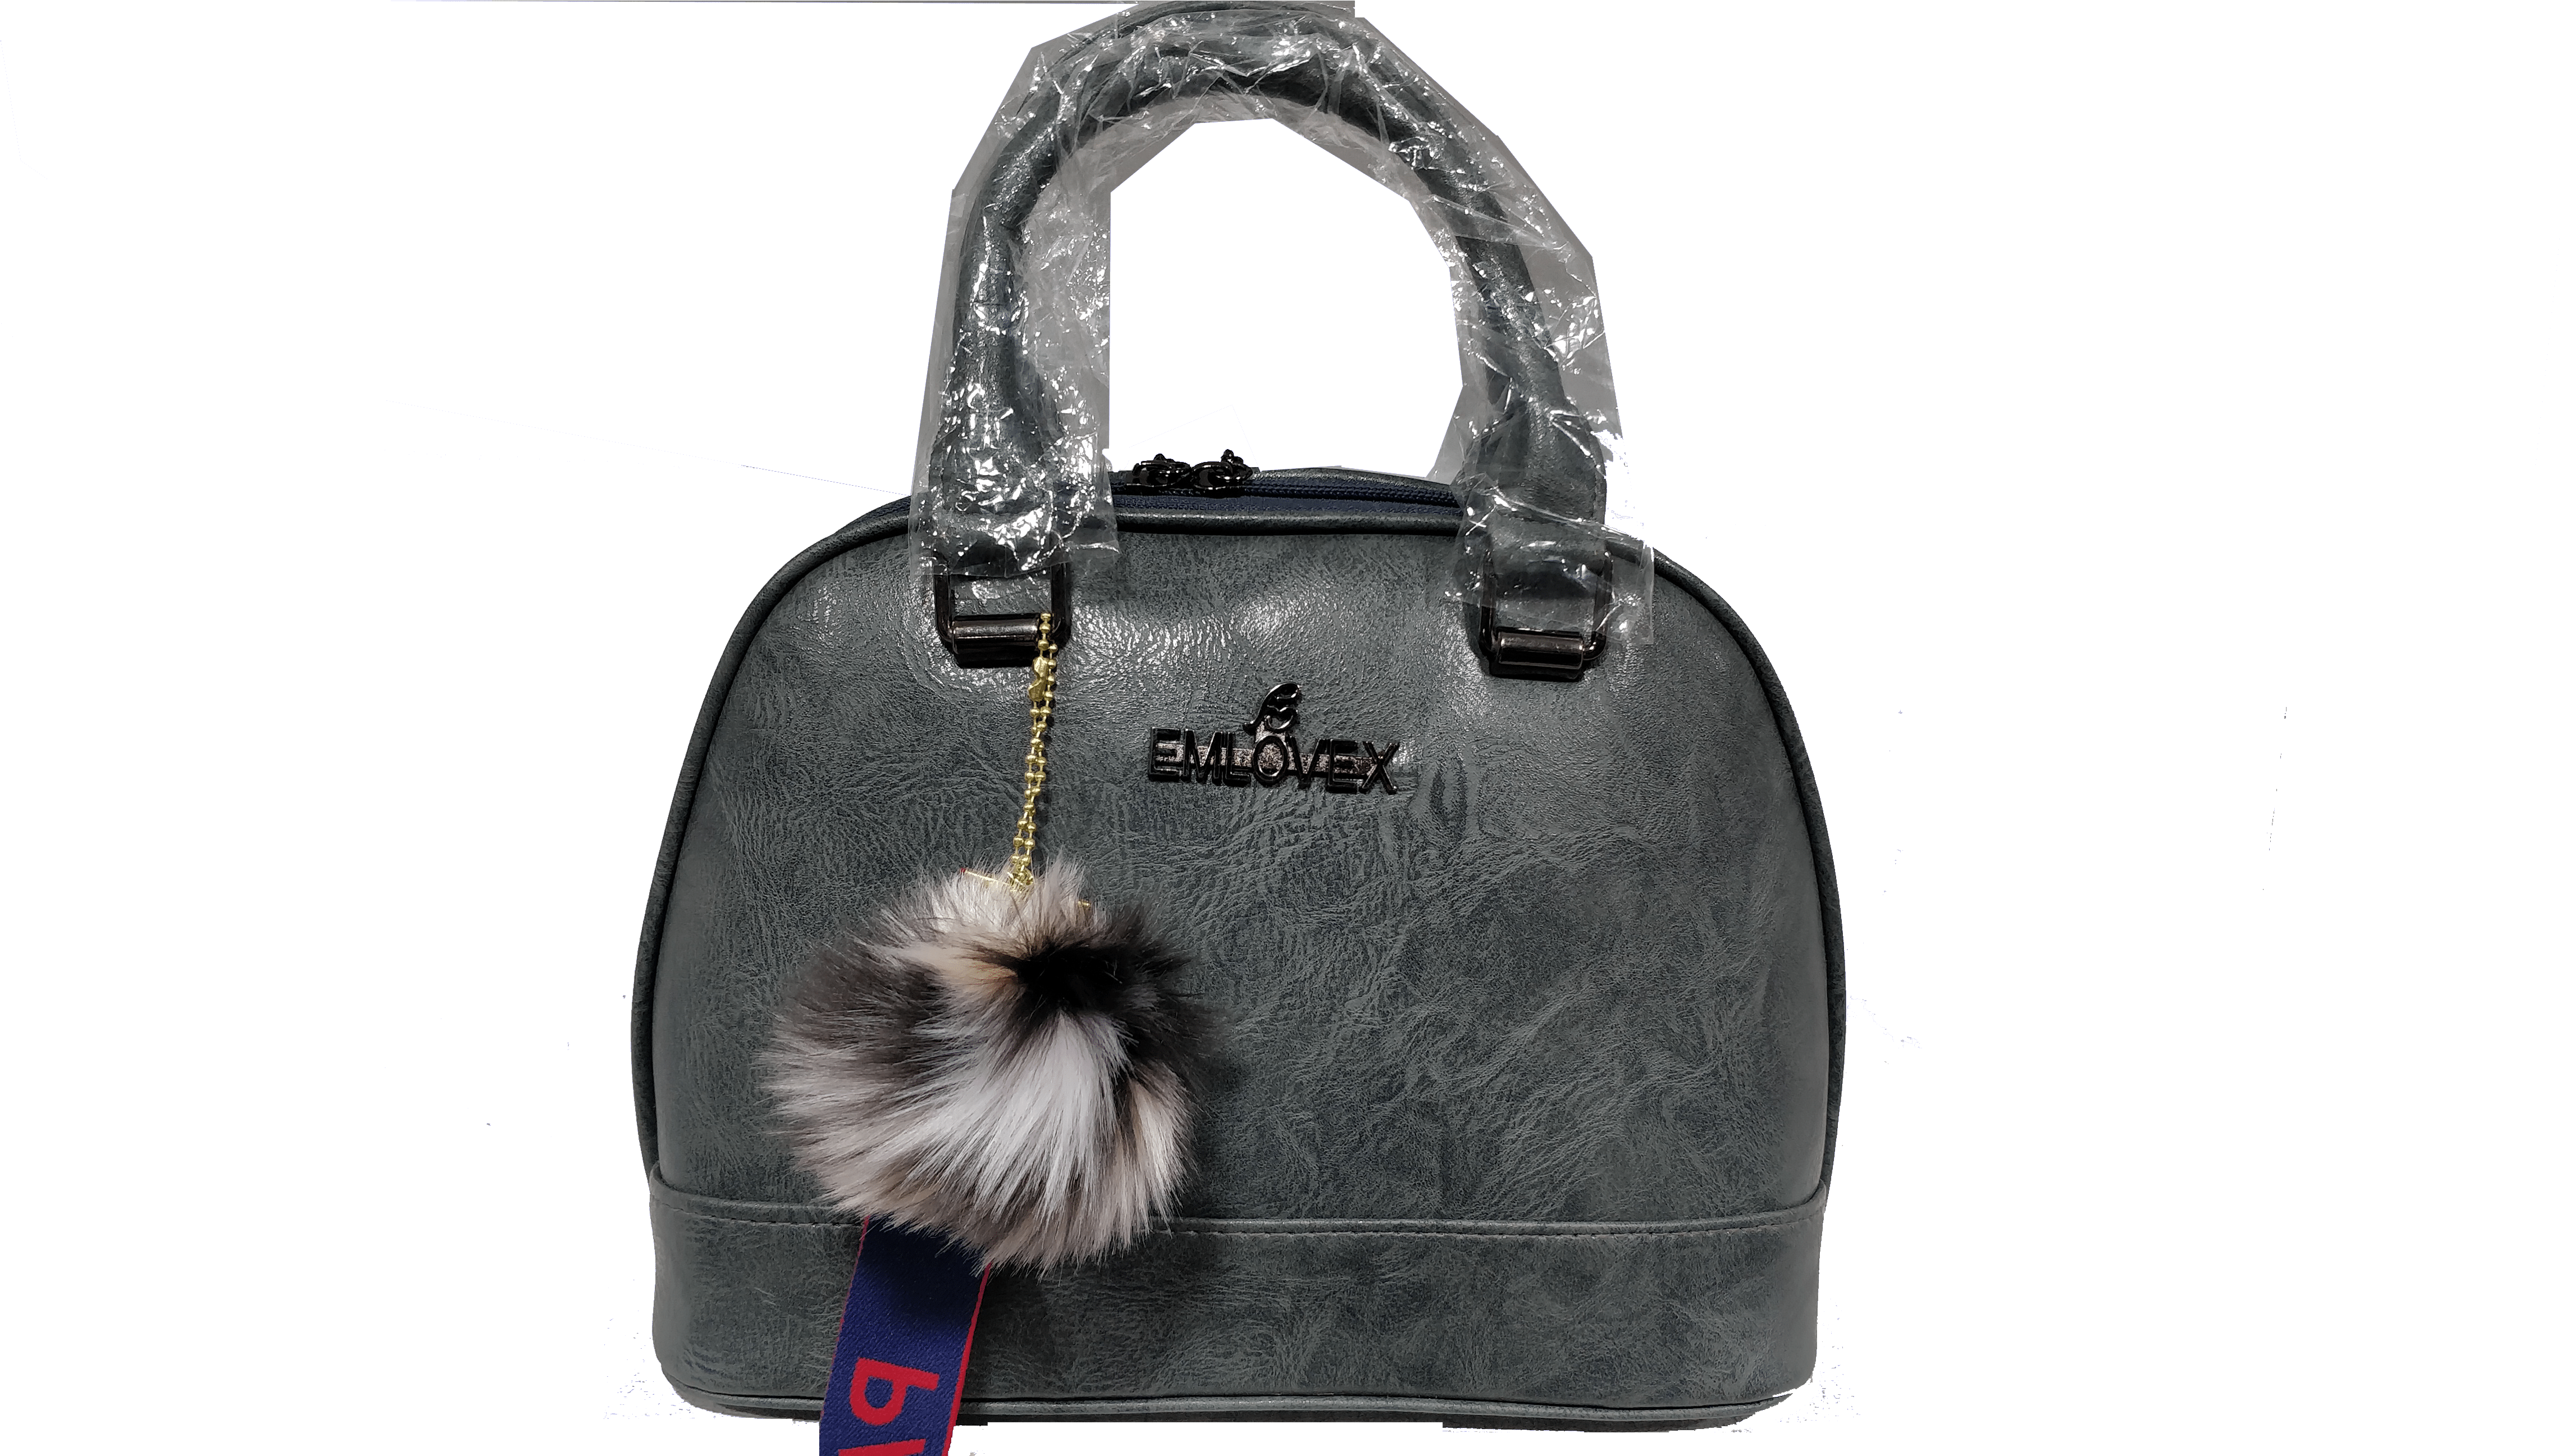 ৳ 1,550 - Handbag Clipart (4608x2592), Png Download